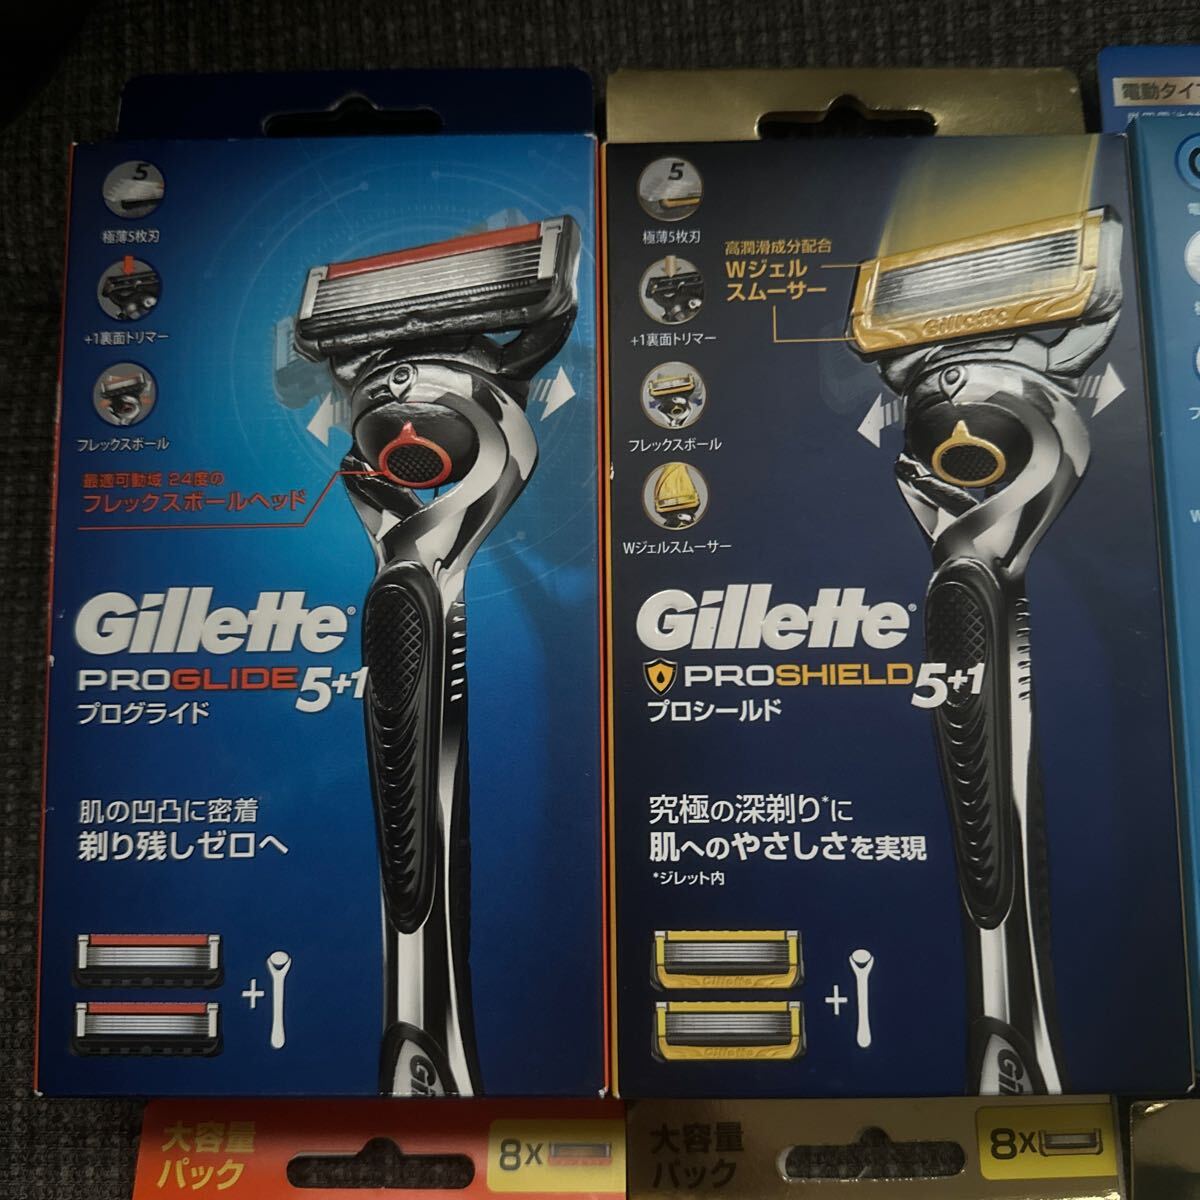 Gillette Pro g ride электрический модель ji let бритва Fusion большая вместимость Pro защита воздушный бритва штекер ride электрический новый товар бритва 